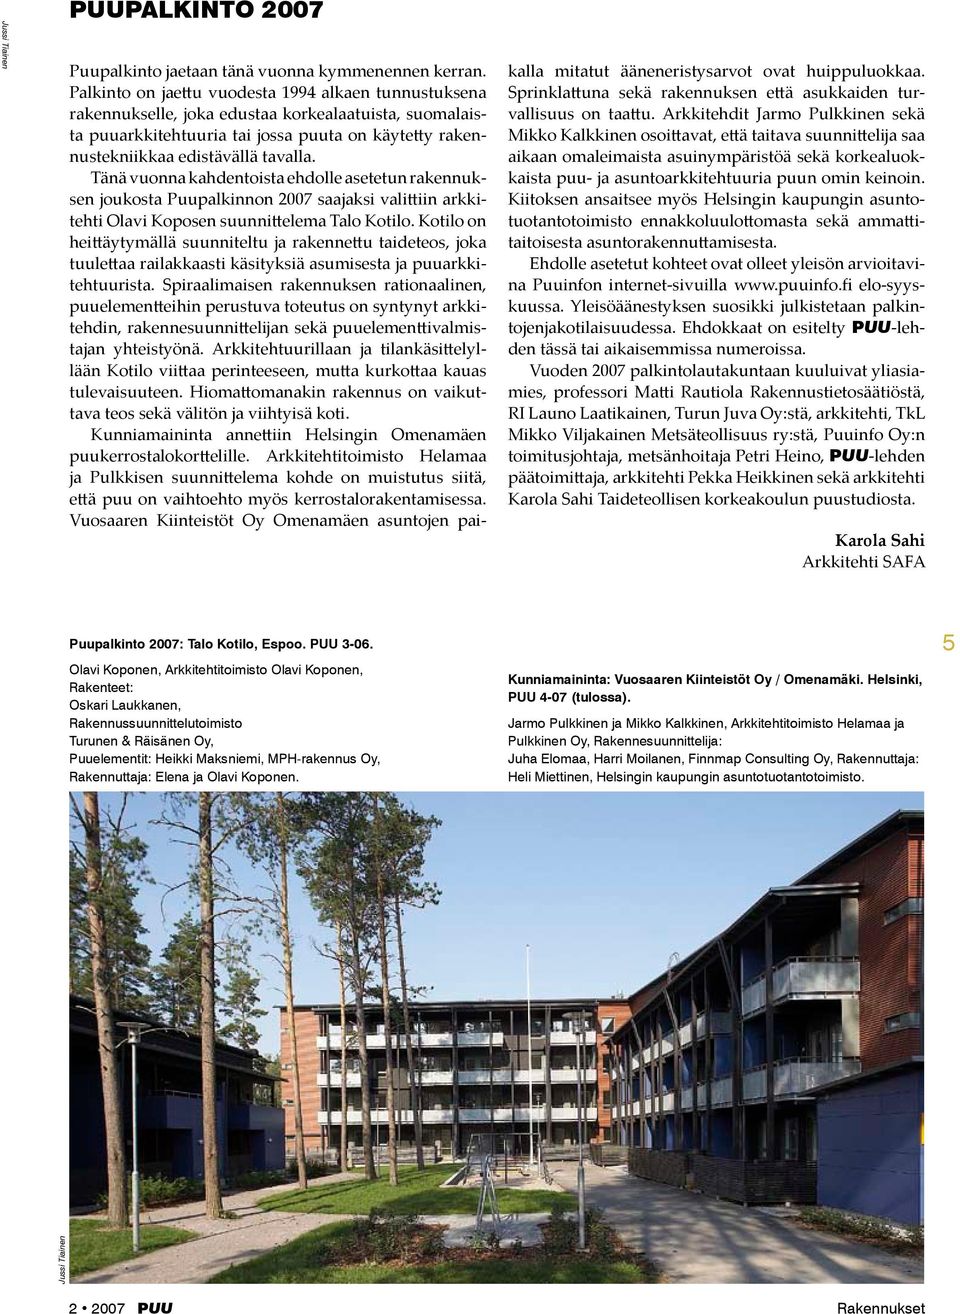 Tänä vuonna kahdentoista ehdolle asetetun rakennuksen joukosta Puupalkinnon 2007 saajaksi valittiin arkkitehti Olavi Koposen suunnittelema Talo Kotilo.